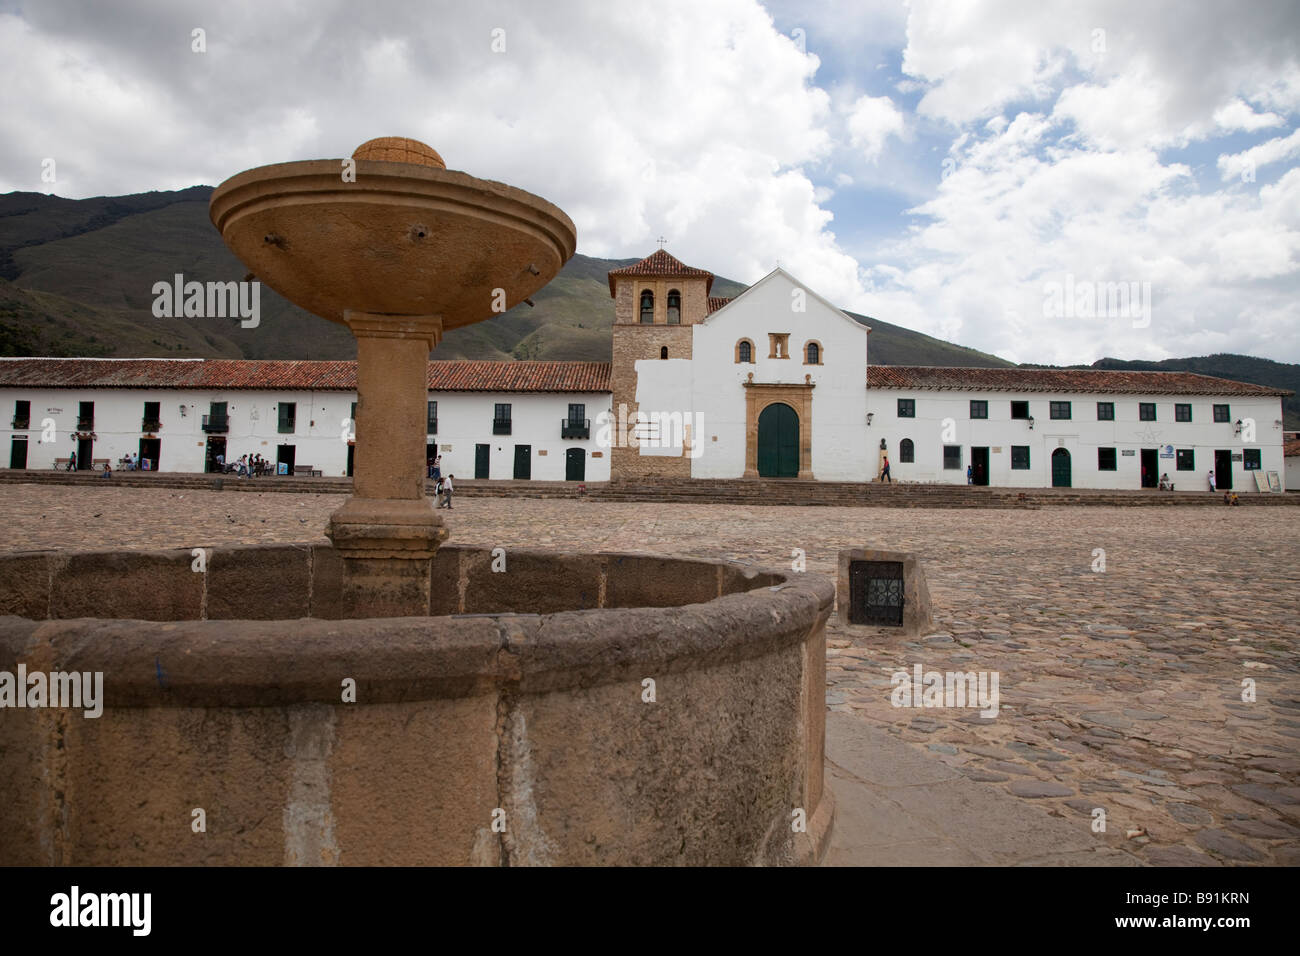 Fountain in the main square of Villa de Leyva, Colombia Stock Photo